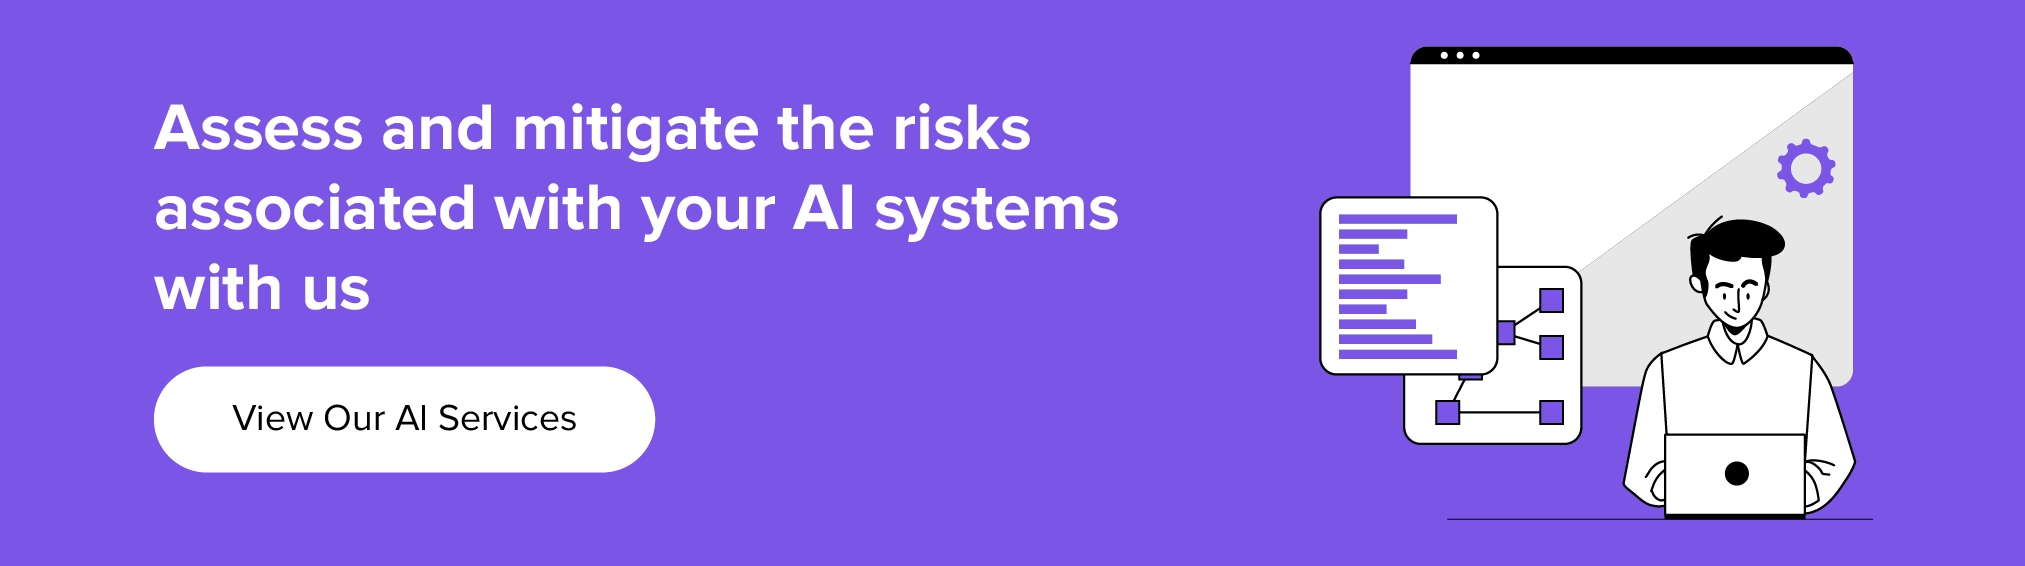 collabora con noi per valutare e mitigare i rischi associati al tuo sistema di intelligenza artificiale